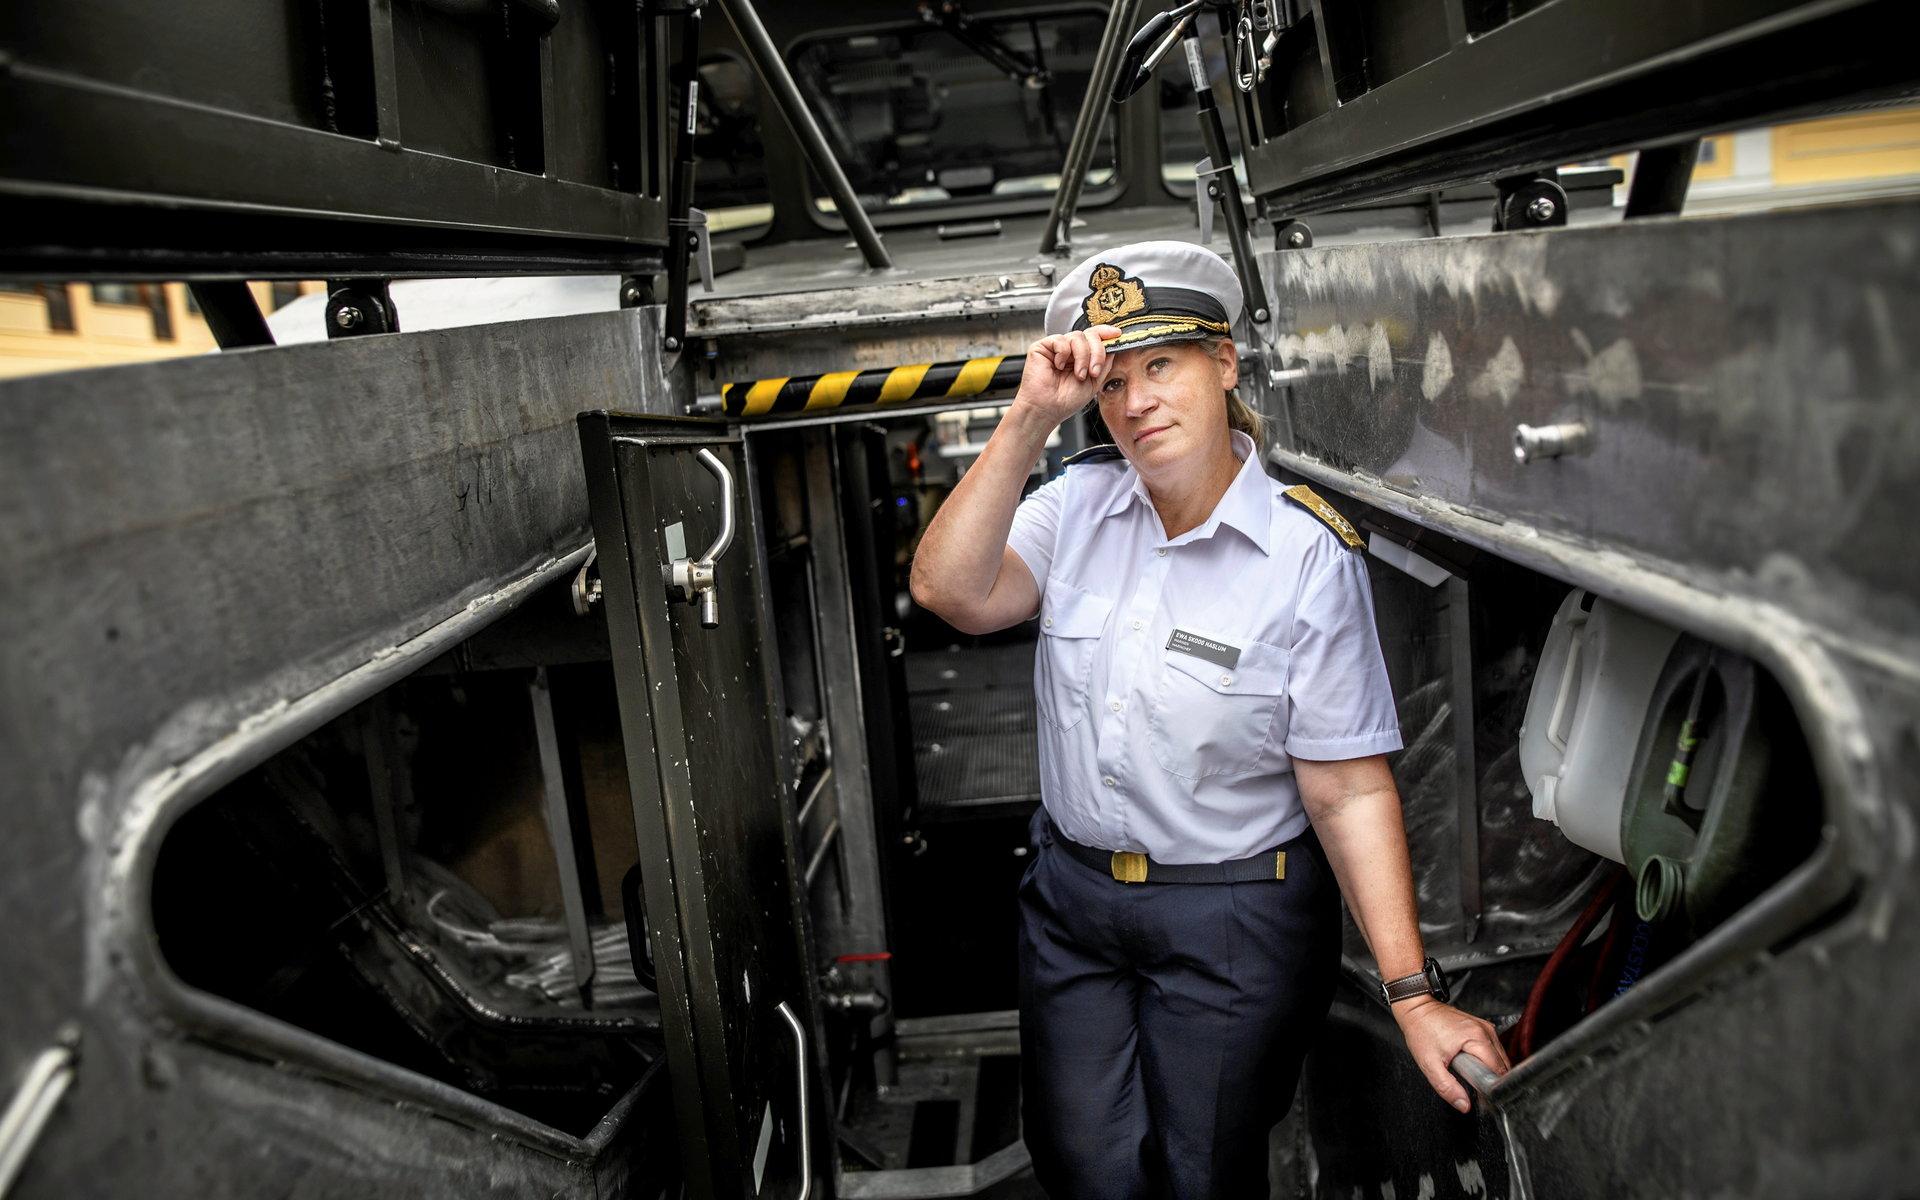 Marinchefen Ewa Skoog Haslum vill ha en större organisation med fler anställda och en permanent fartygsbasering på Västkusten.